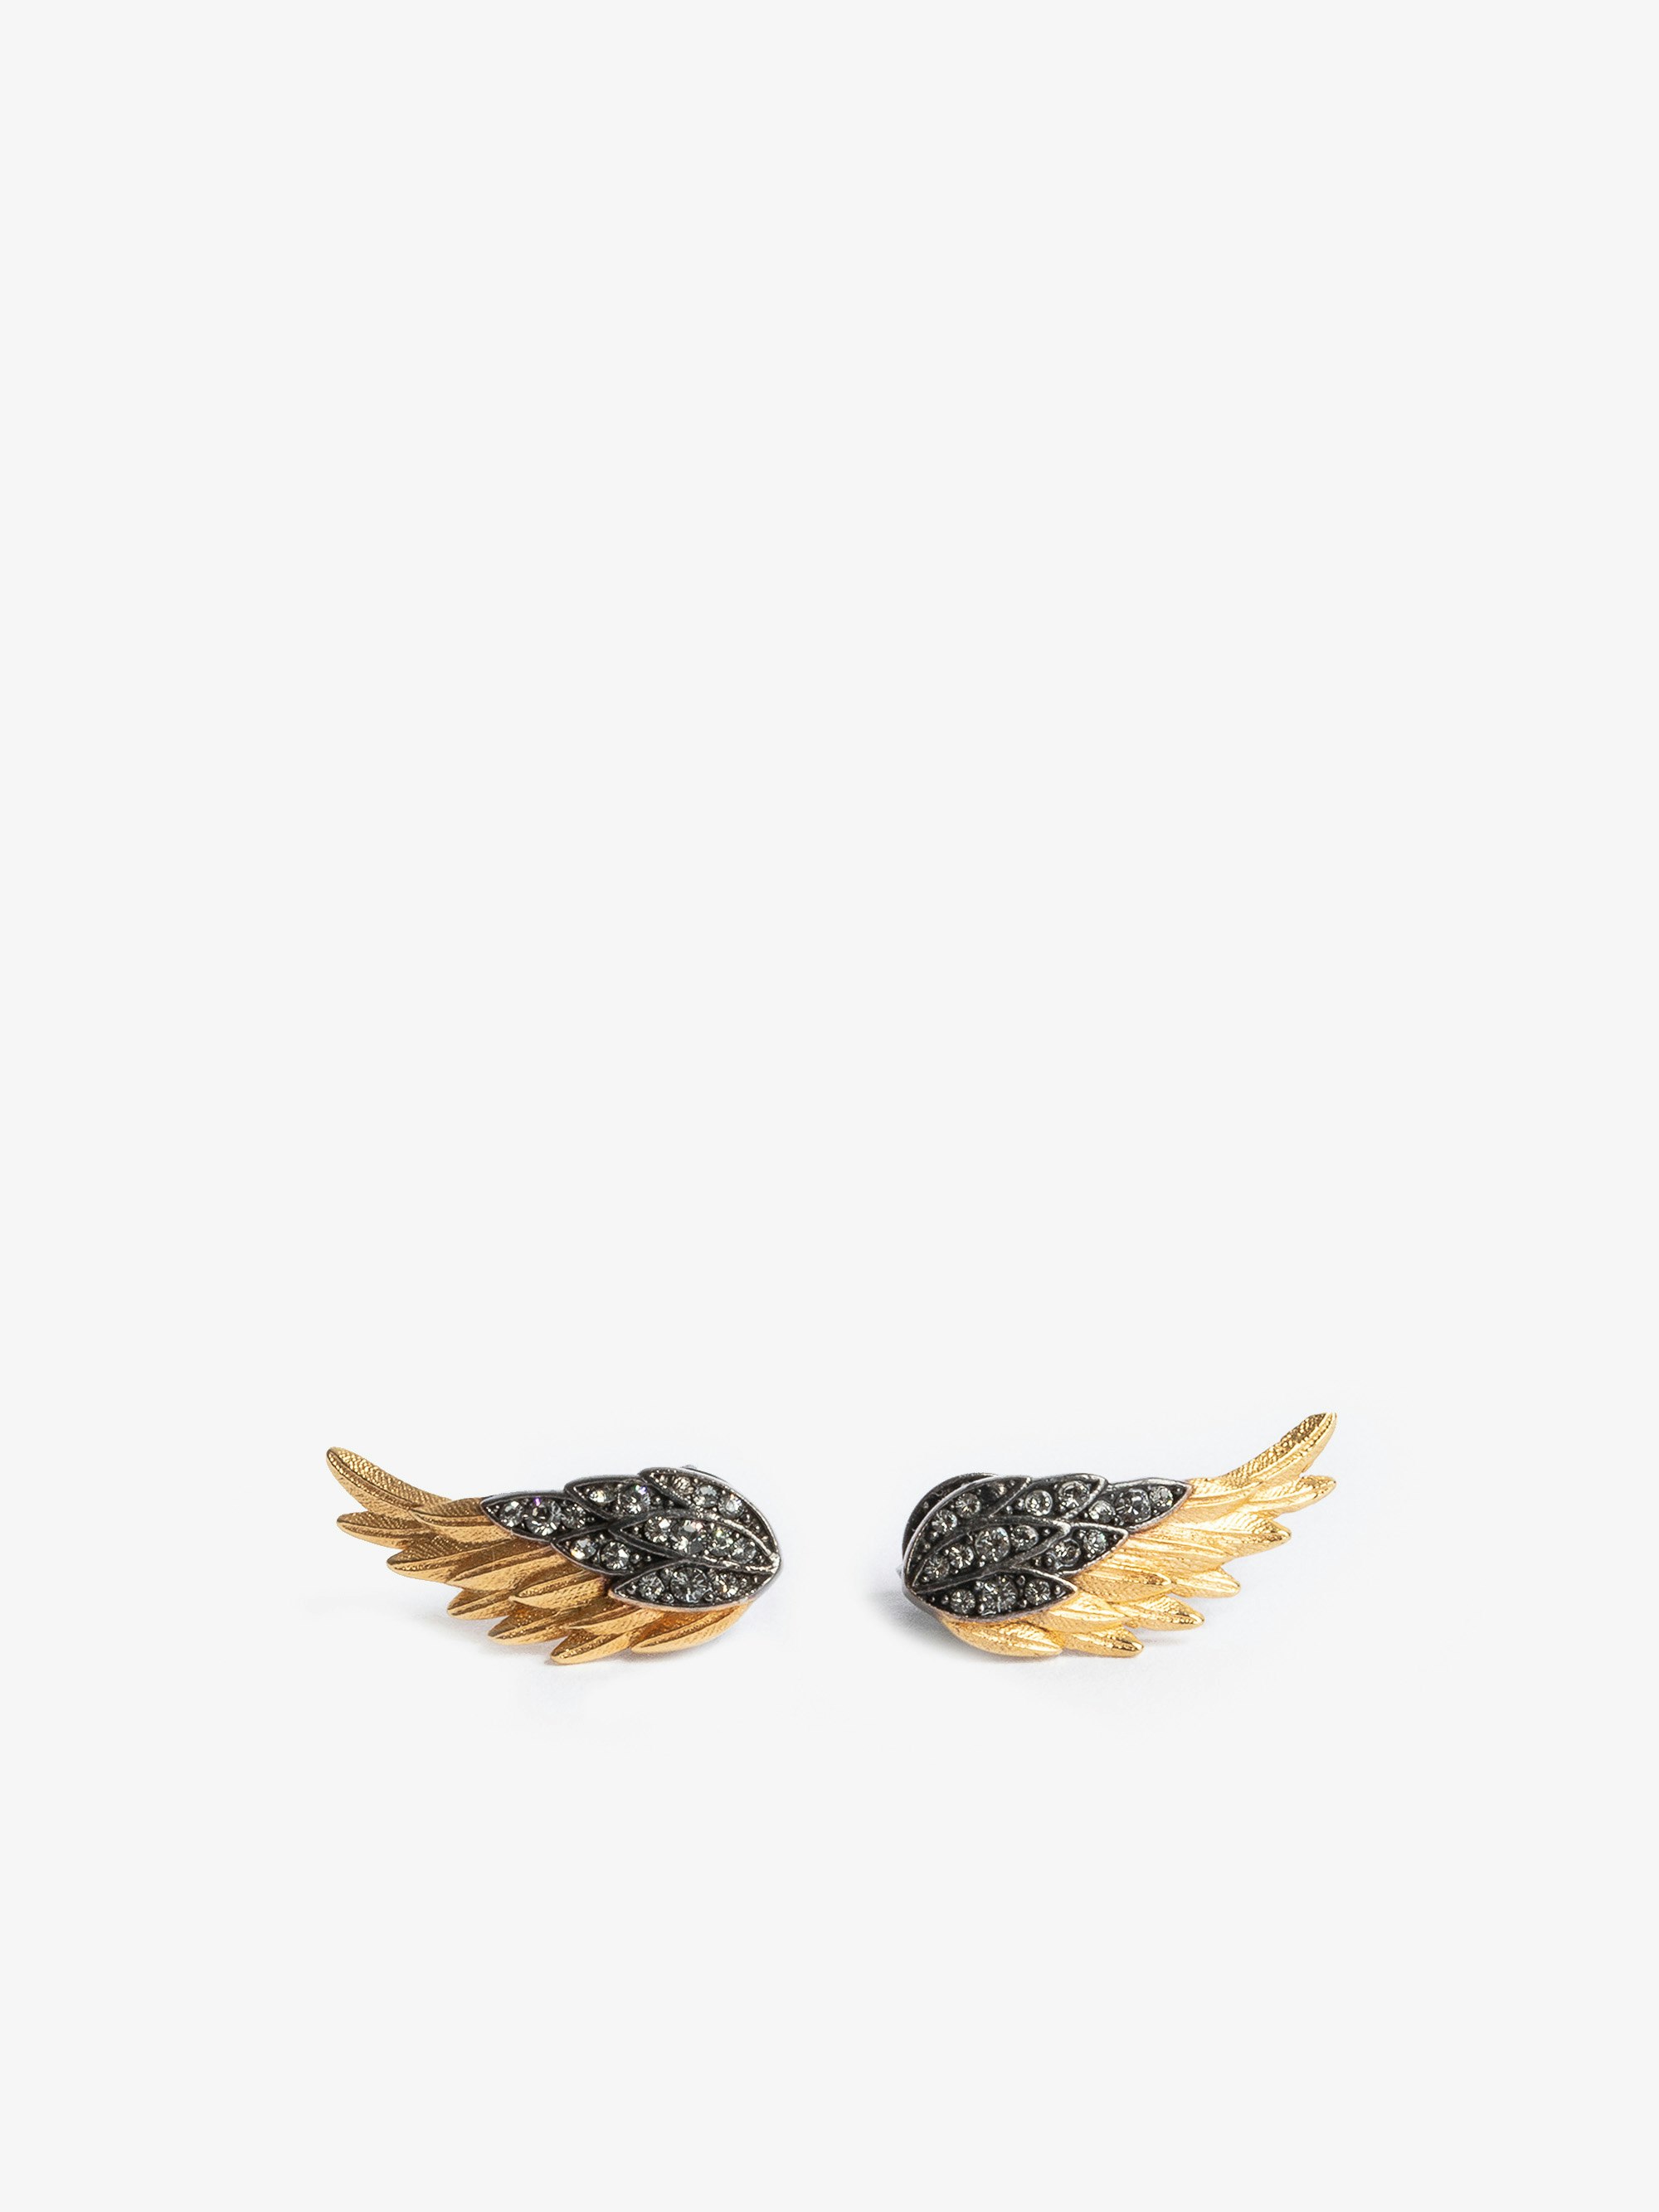 Ohrringe Rock Feather - Ohrringe in Flügelform aus geschwärztem und goldfarbenem, mit Kristallen besetztem Messing.